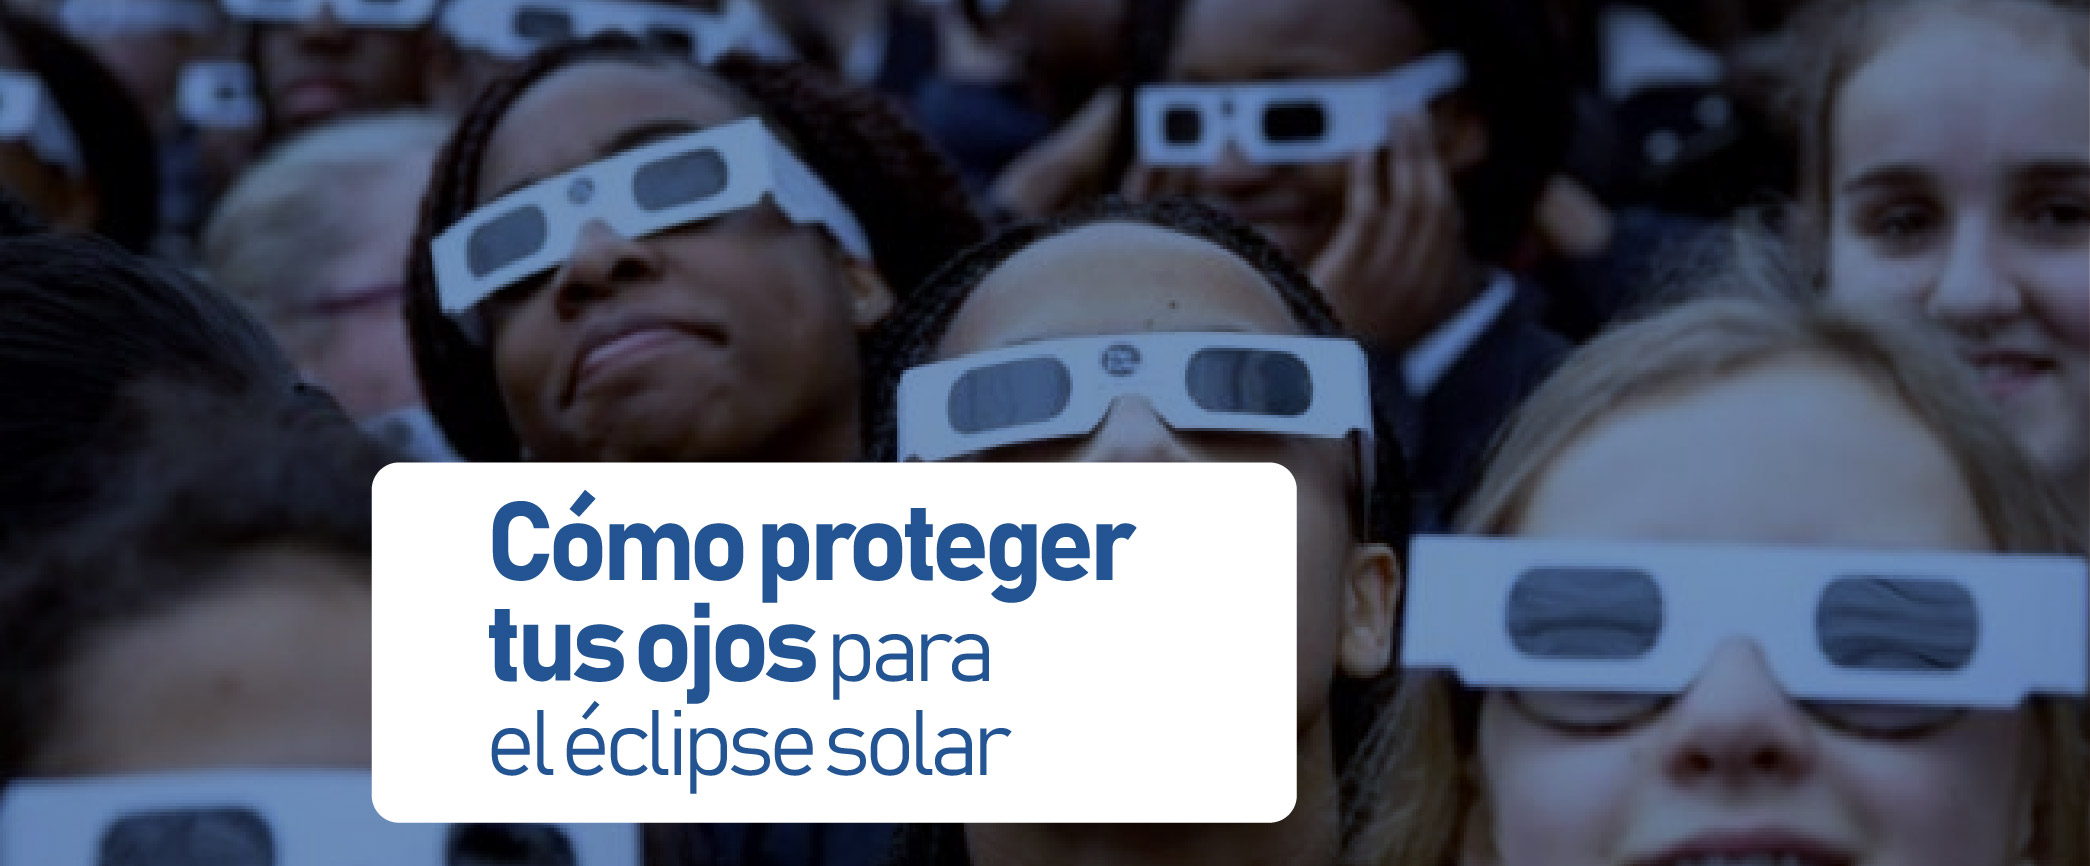 Eclipse Solar en Colombia: Importancia y Precauciones para Proteger Tus Ojos